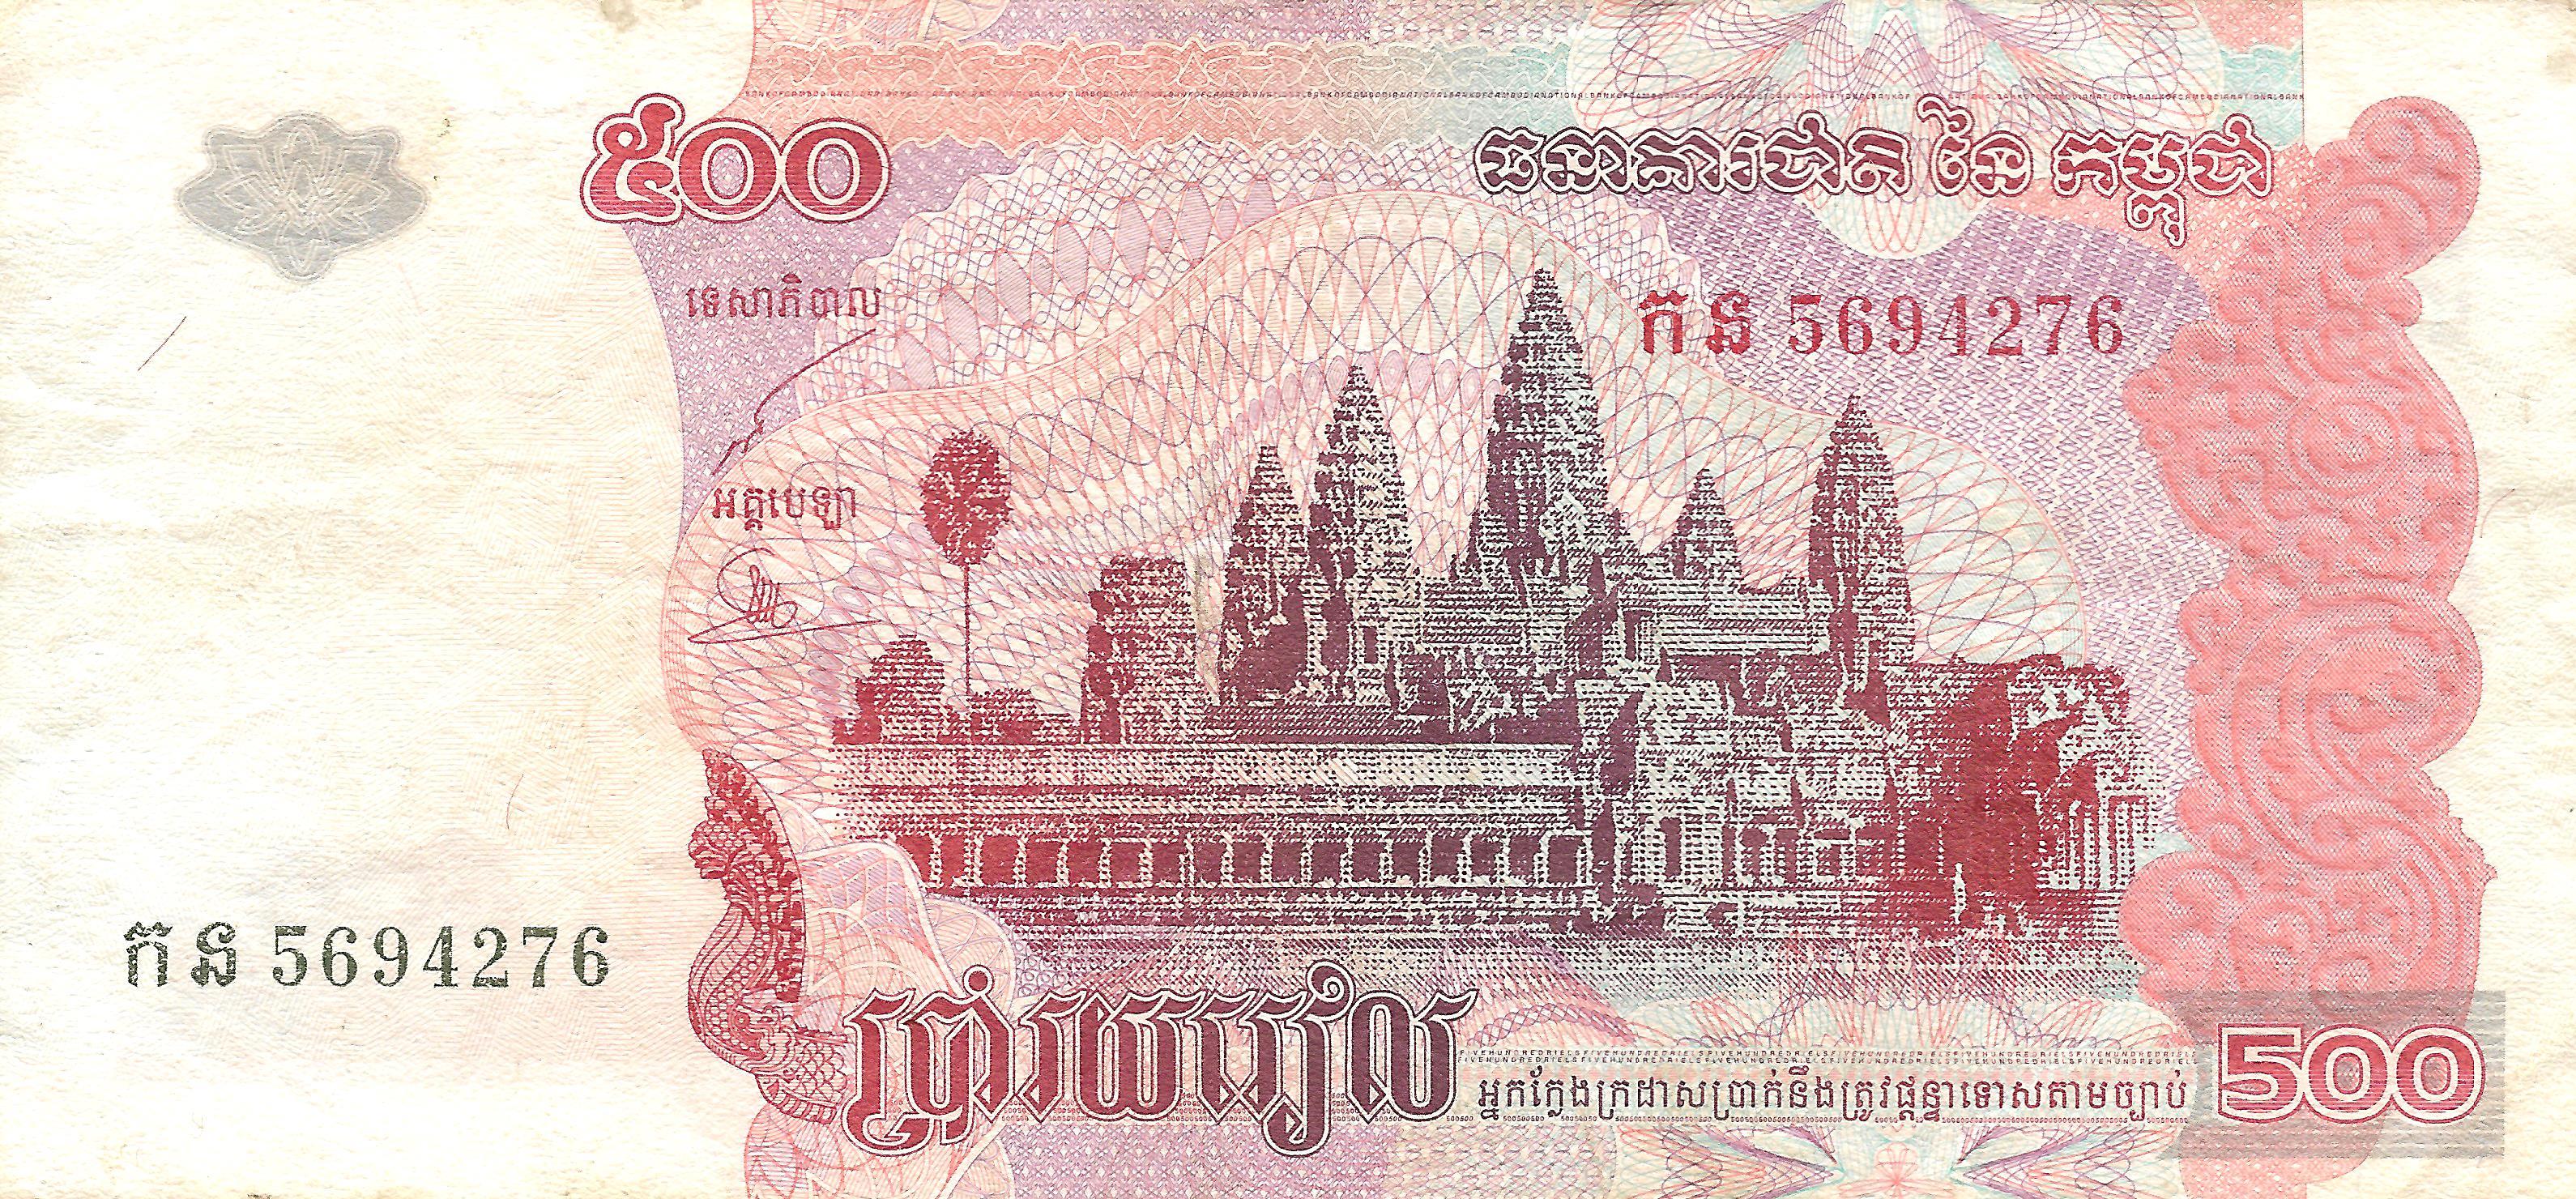 Là đơn vị tiền tệ chính thức của Campuchia, Riel Campuchia không chỉ đại diện cho giá trị kinh tế mà còn phản ánh nét độc đáo văn hóa và tinh thần đồng đội của nhân dân nơi đây. Khám phá những bức ảnh tuyệt đẹp về Riel Campuchia để trải nghiệm sự đa dạng và phong phú của nền văn hoá Campuchia.